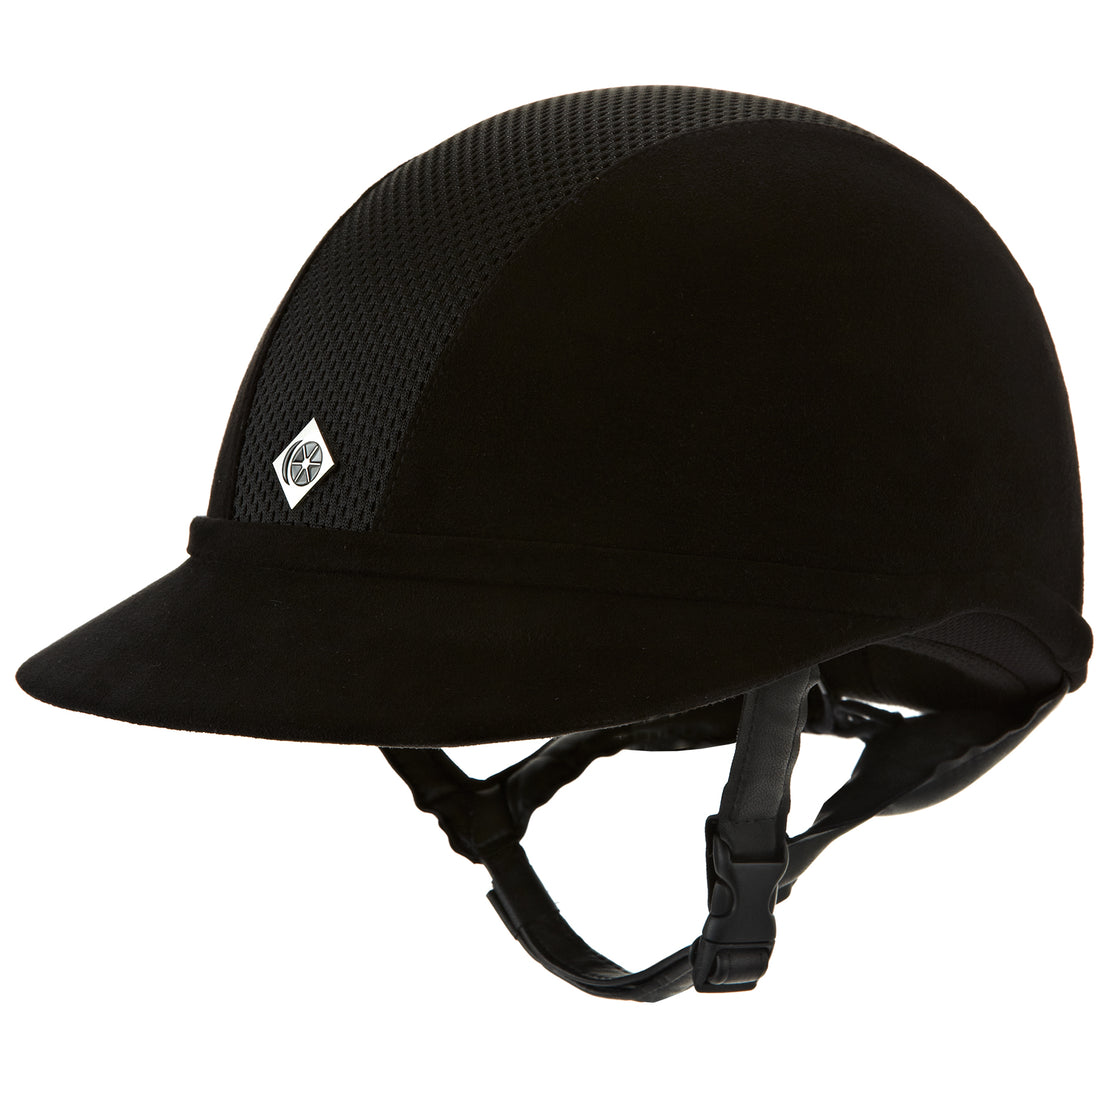 Charles Owen SP8 Plus - Riding Hat - Black